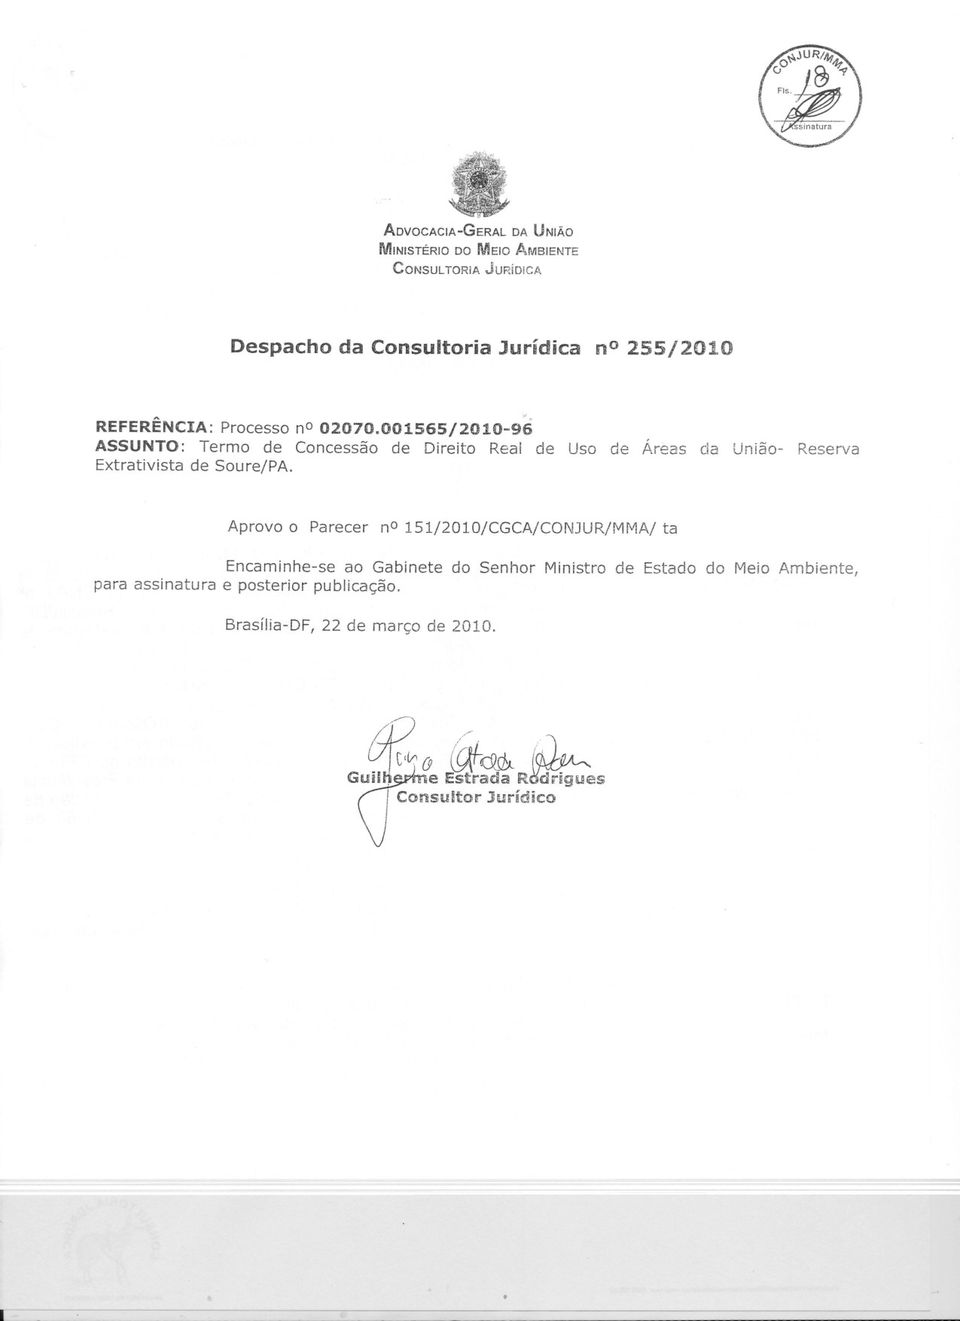 001565/2010-96 ASSUNTO: Termo de Concessão de Direito Real de Uso de Áreas da União- Reserva Extrativista de Soure/PA.